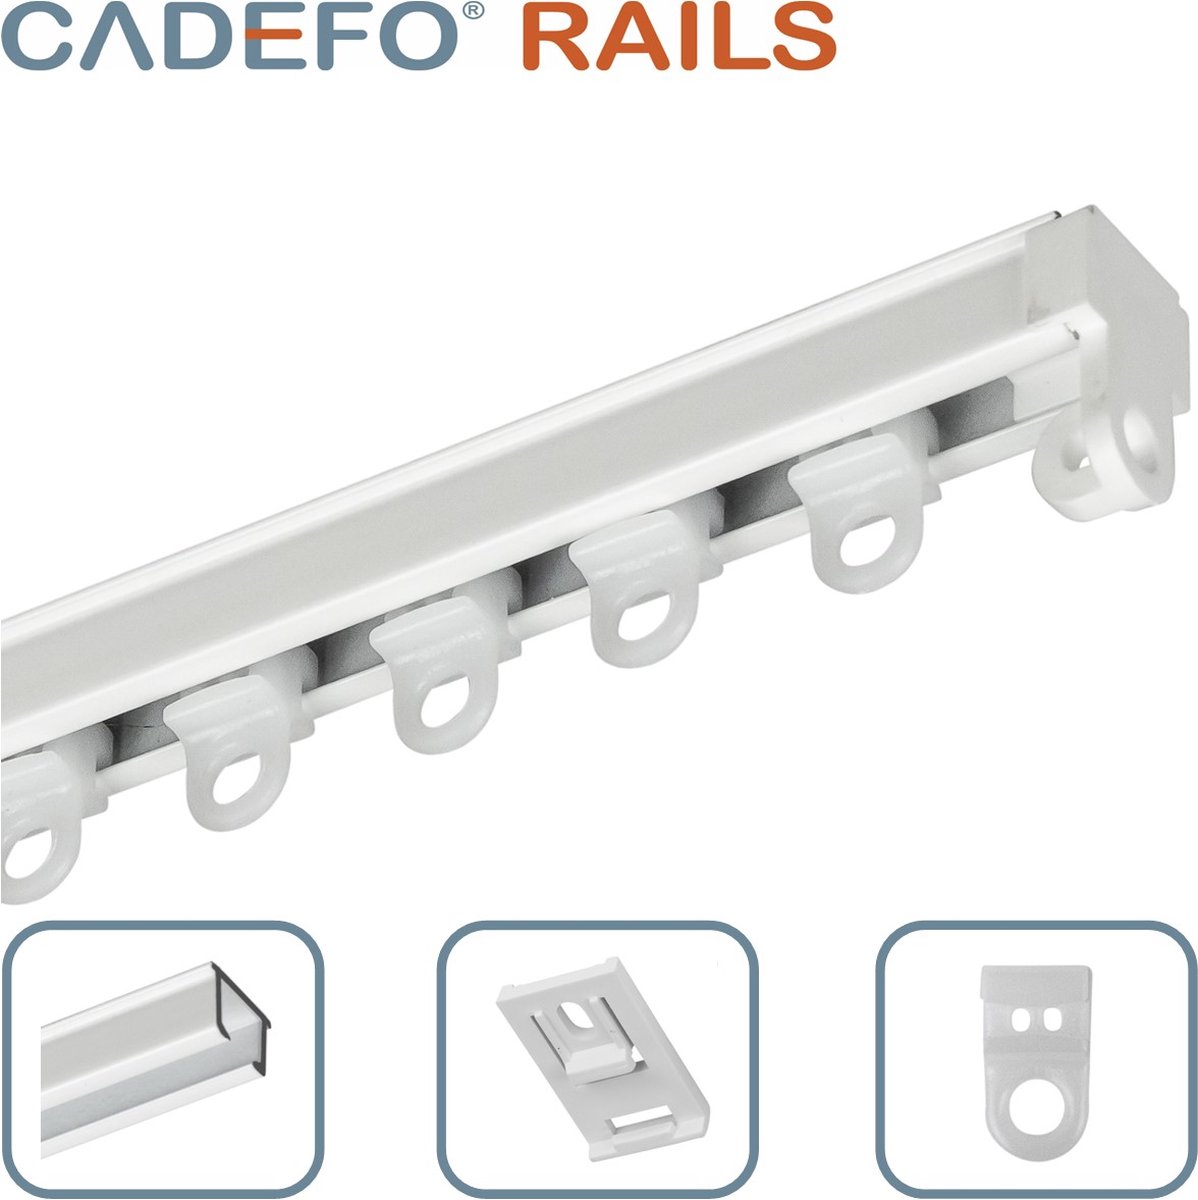 CADEFO RAILS (151 - 200 cm) Gordijnrails - Compleet op maat! - UIT 1 STUK - Leverbaar tot 6 meter - Plafondbevestiging - Lengte 160 cm